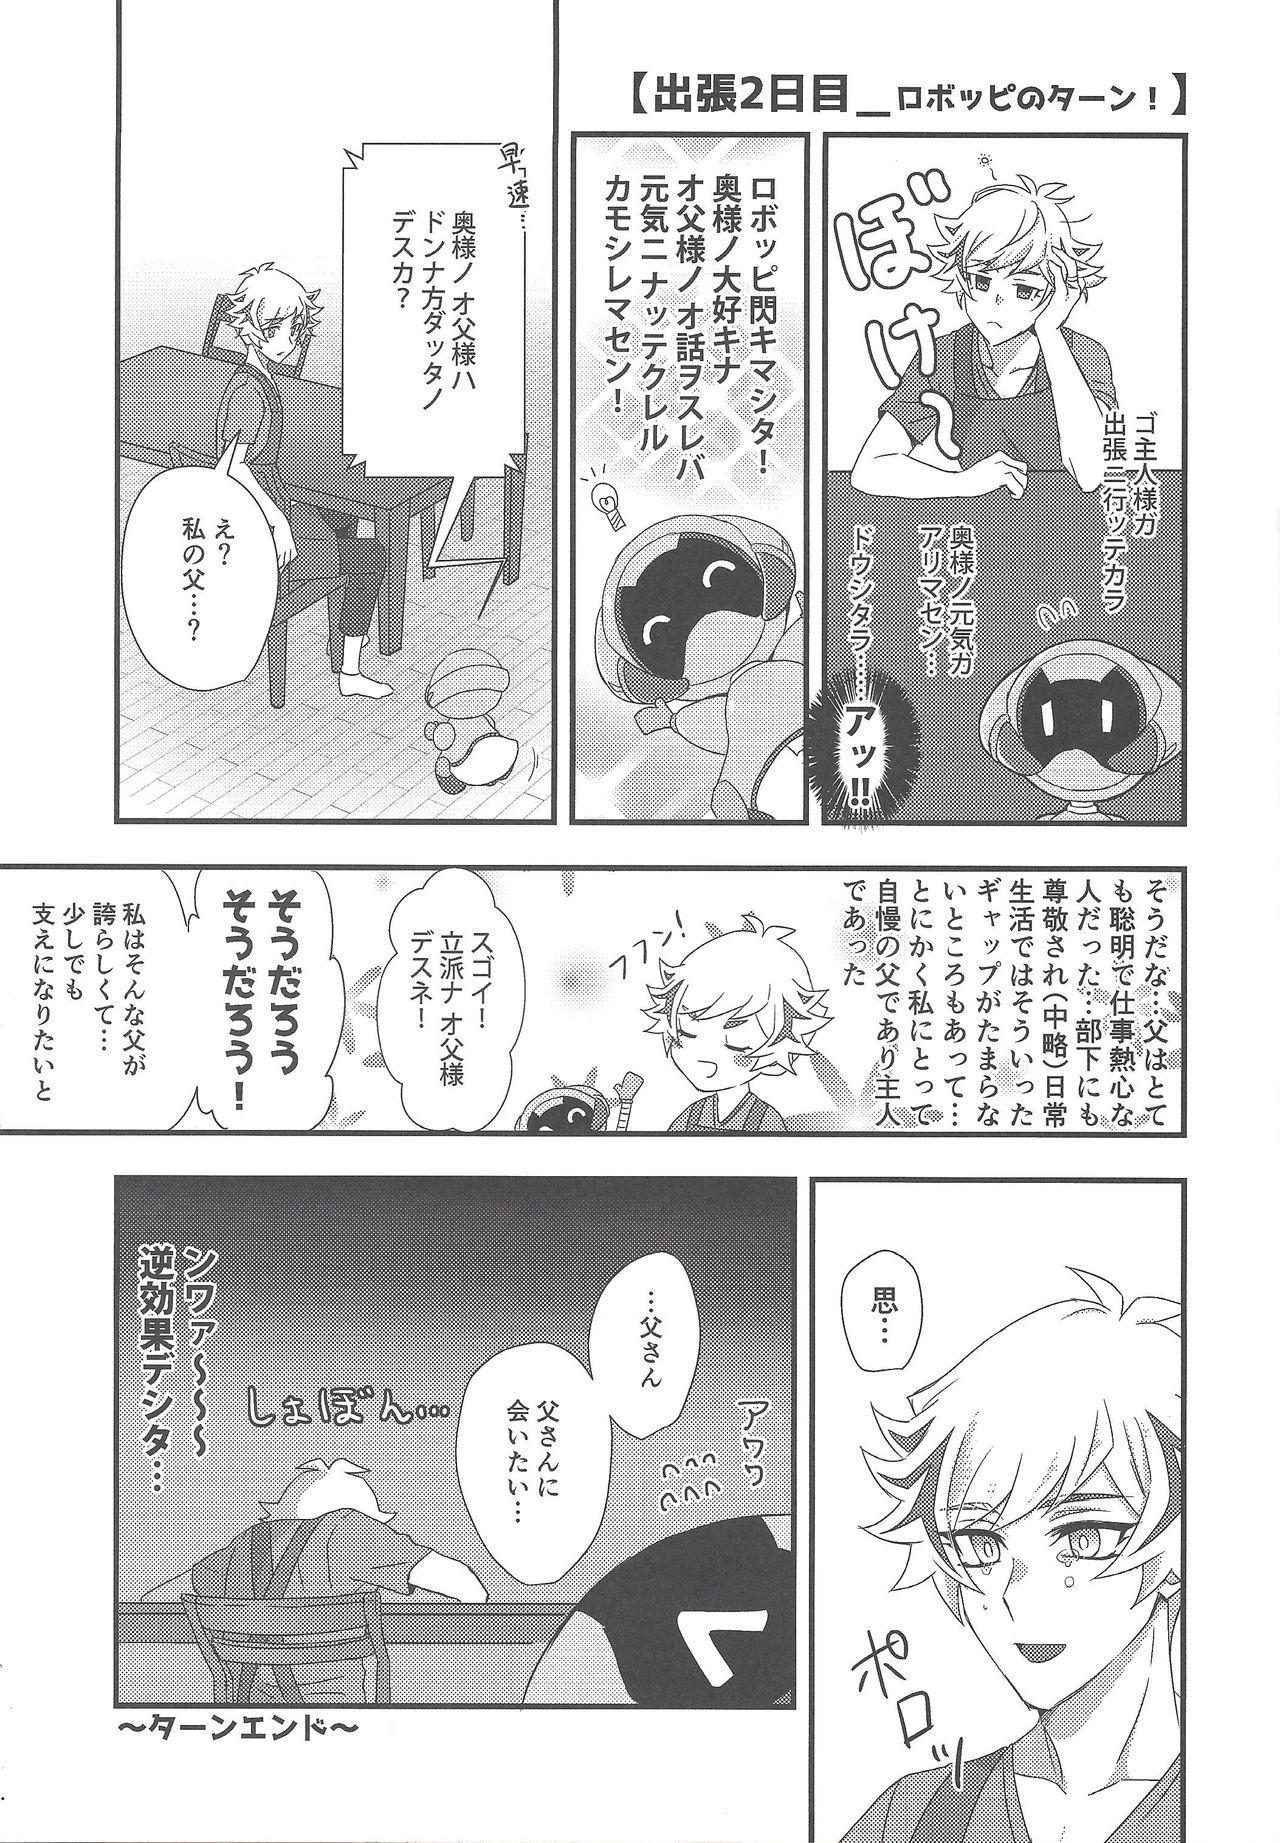 Story Hitodzuma Ryoken Ⅱ - Yu-gi-oh vrains Pounded - Page 8